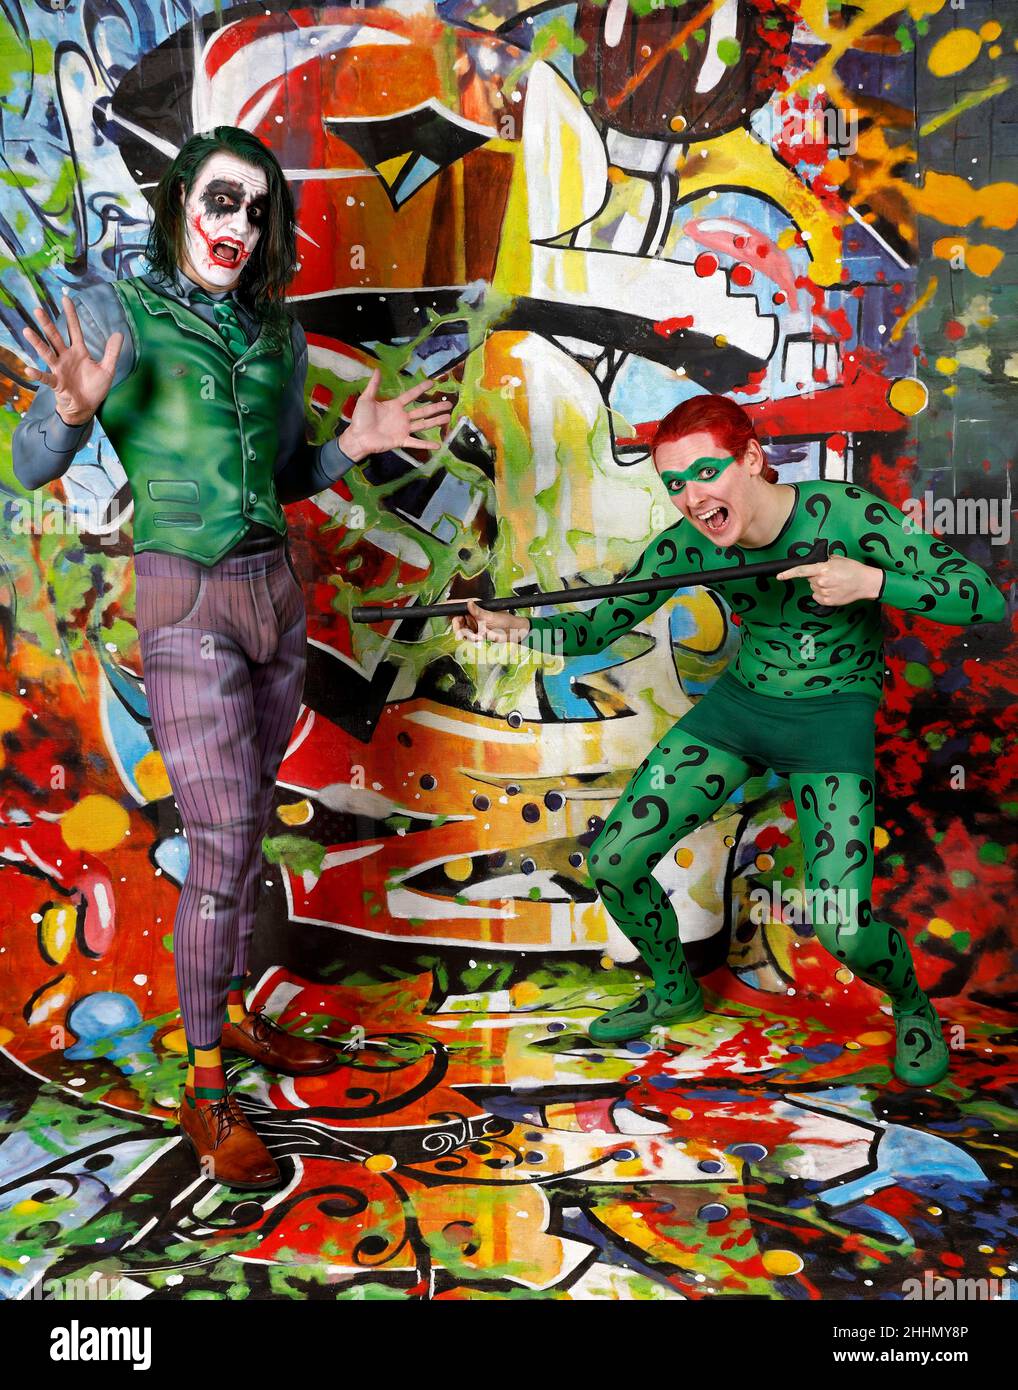 GEEK ART - Bodypainting et Transformaking: Joker rencontre Riddler Photoskriting avec Patrick Kiel comme Joker et Paul Skupin comme Riddler au studio Duesterwald le 23 janvier 2022 à Hamelin - Un projet du photographe Tschiponnique Skupin et du peintre du corps Enrico Lein Banque D'Images